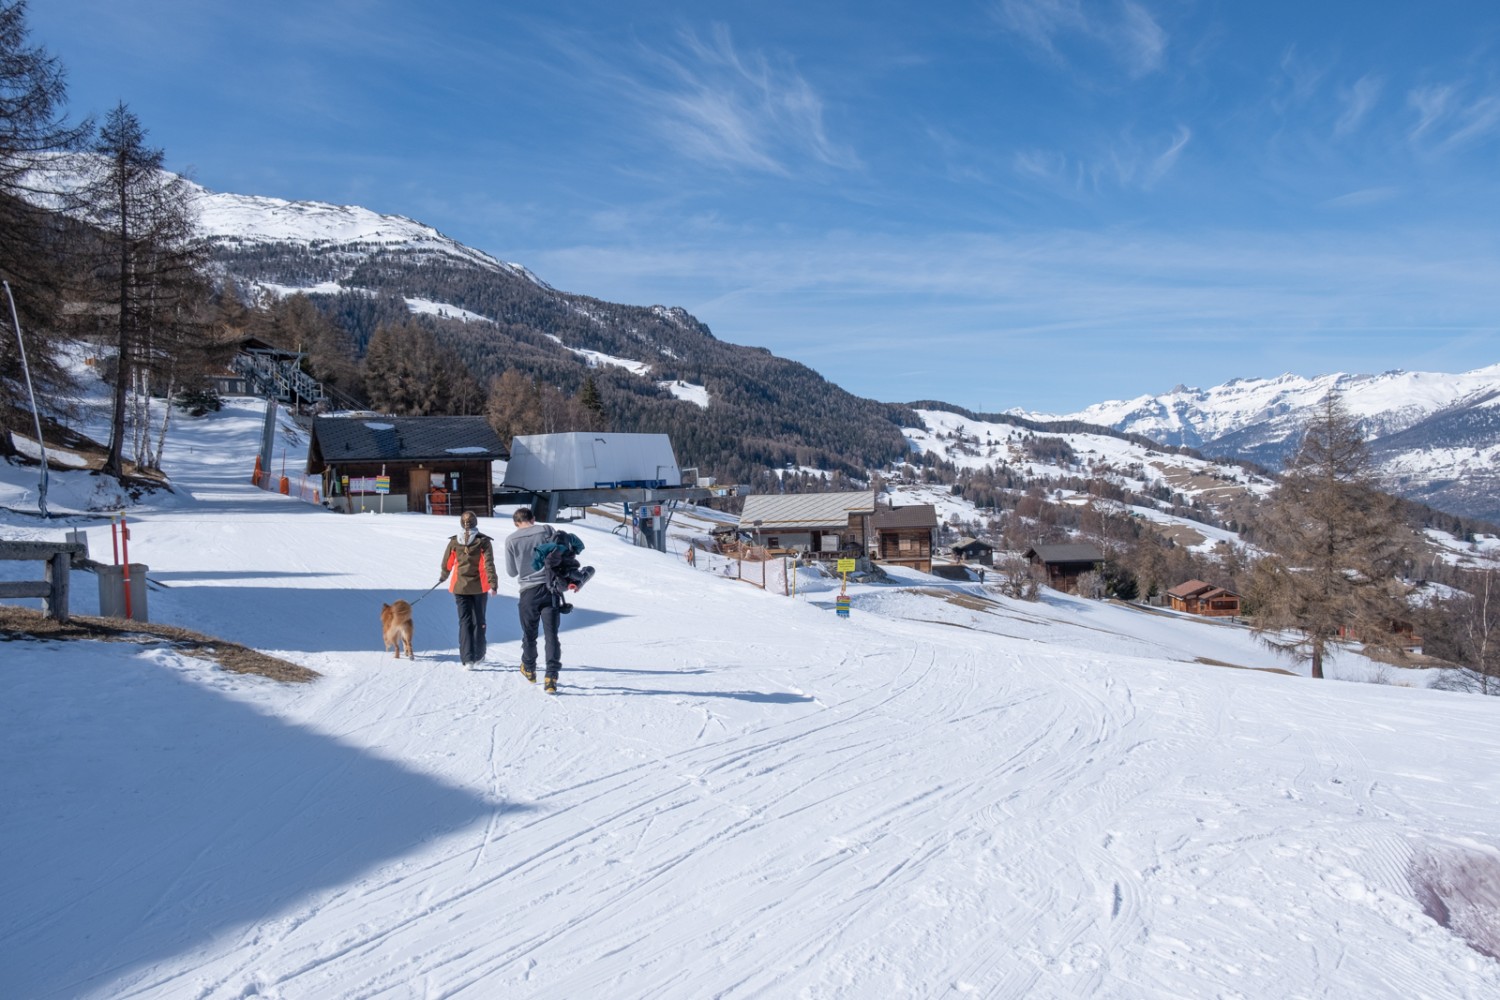 À la Brandalp, on rejoint le domaine skiable, d’où l’on peut descendre en télésiège vers Unterbäch. Photo: Markus Ruff